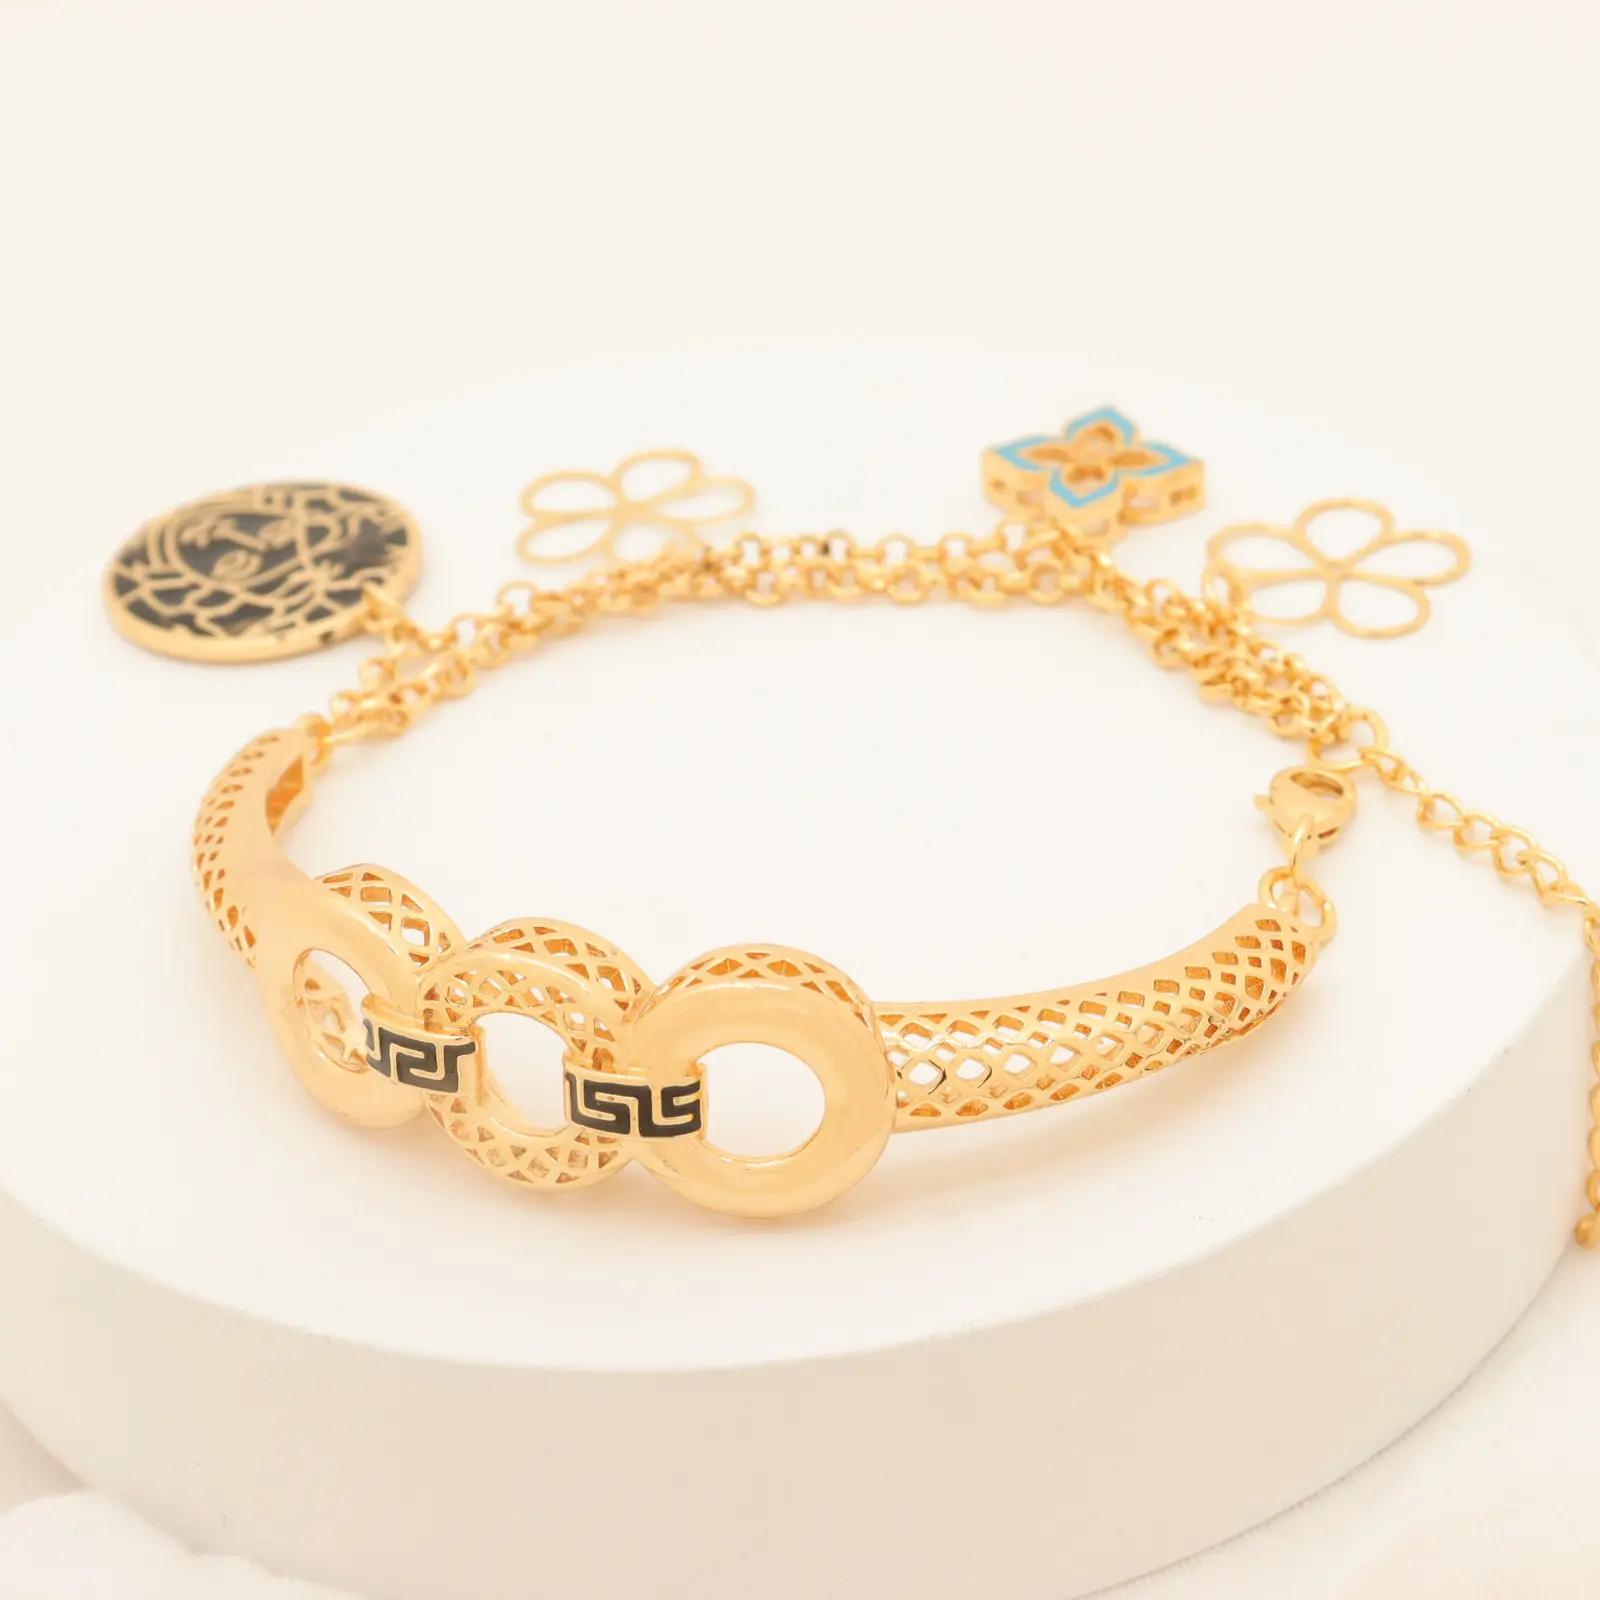 Personalizzato arabia saudita 24k placcato oro smalto pittura braccialetto di olio nero braccialetto fortunato ciondolo braccialetto braccialetti gioielli